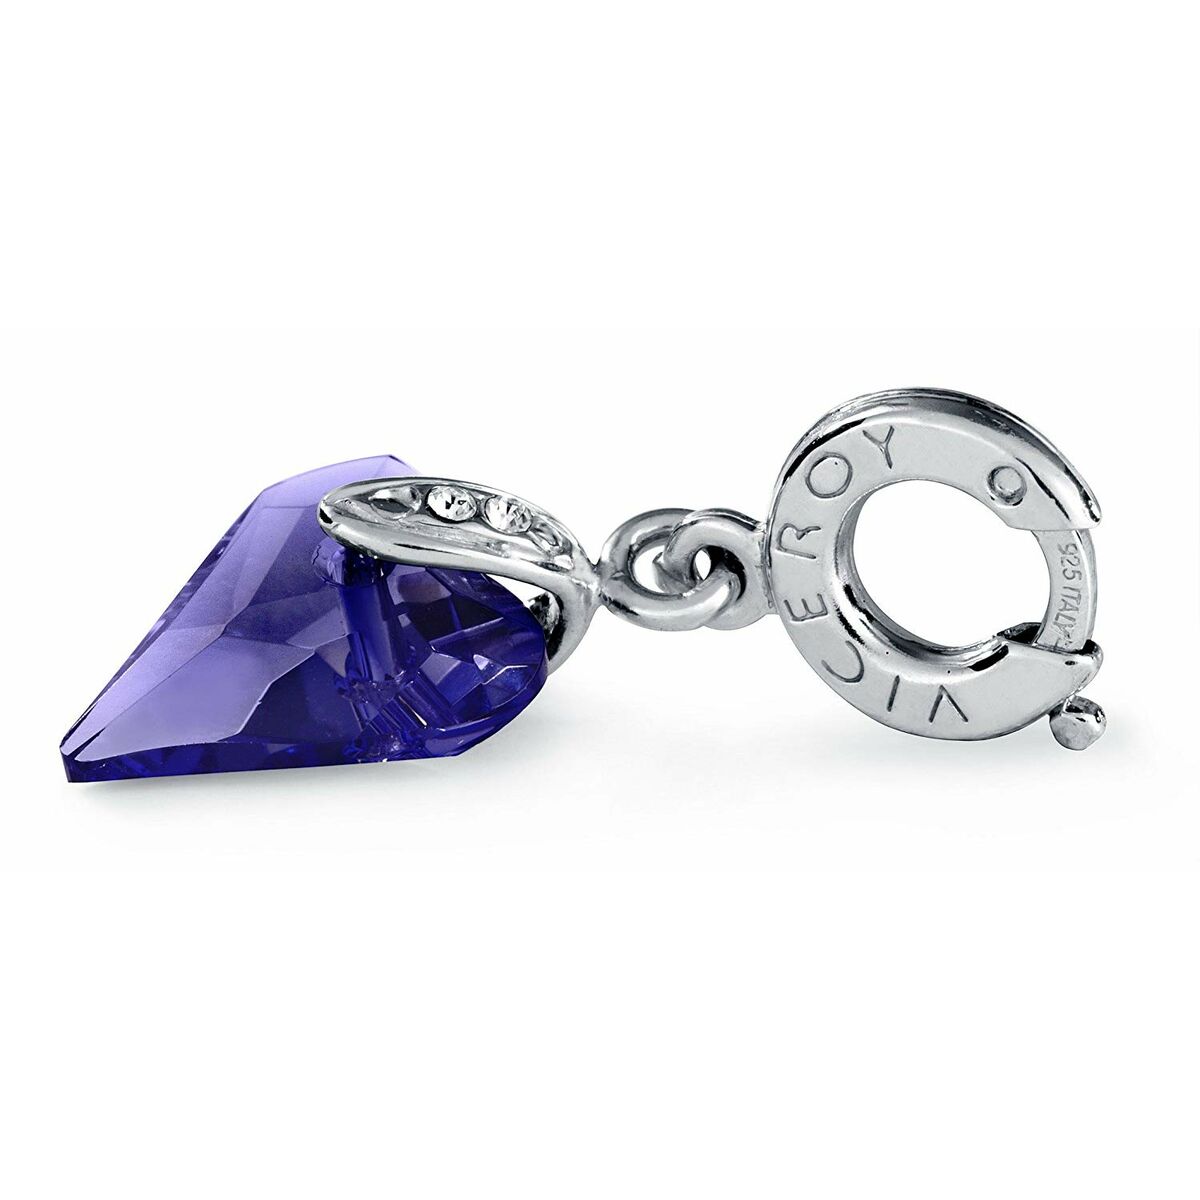 Ladies' Beads Viceroy VMM0288-07 Purple 1 cm